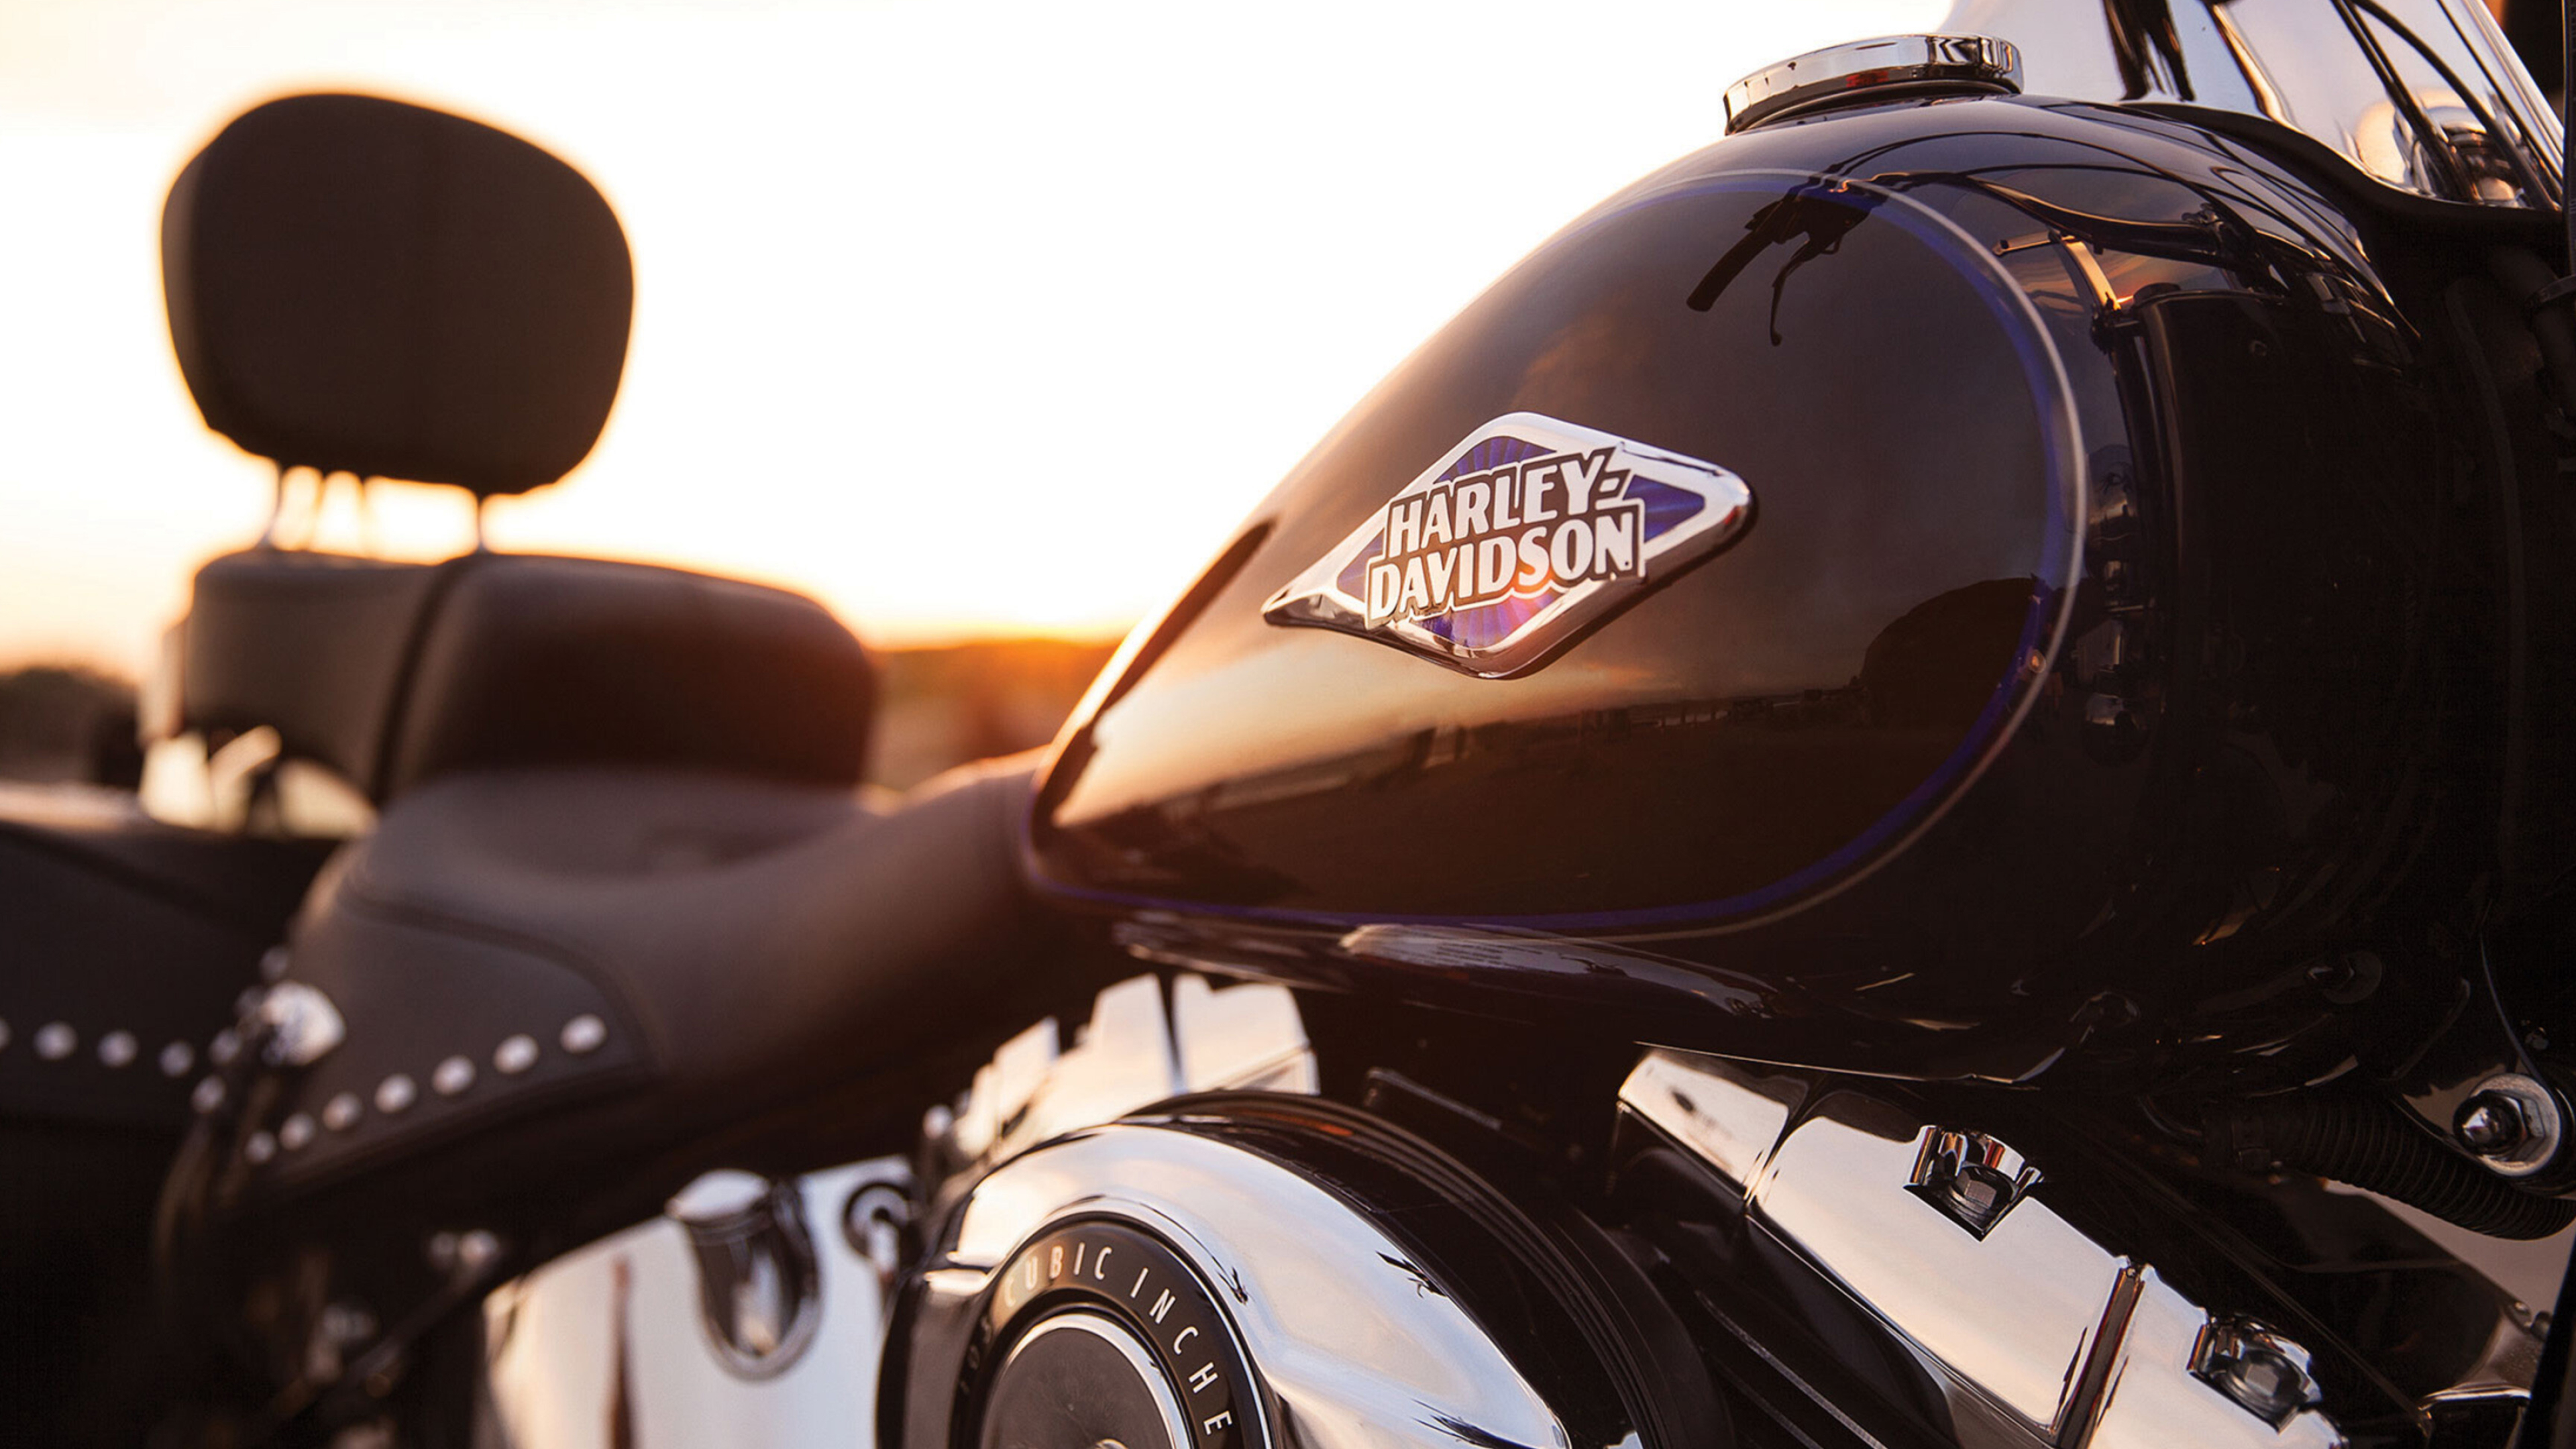 Harley-Davidson Softail, Motorcycle Wallpaper, 3840x2160 4K Desktop